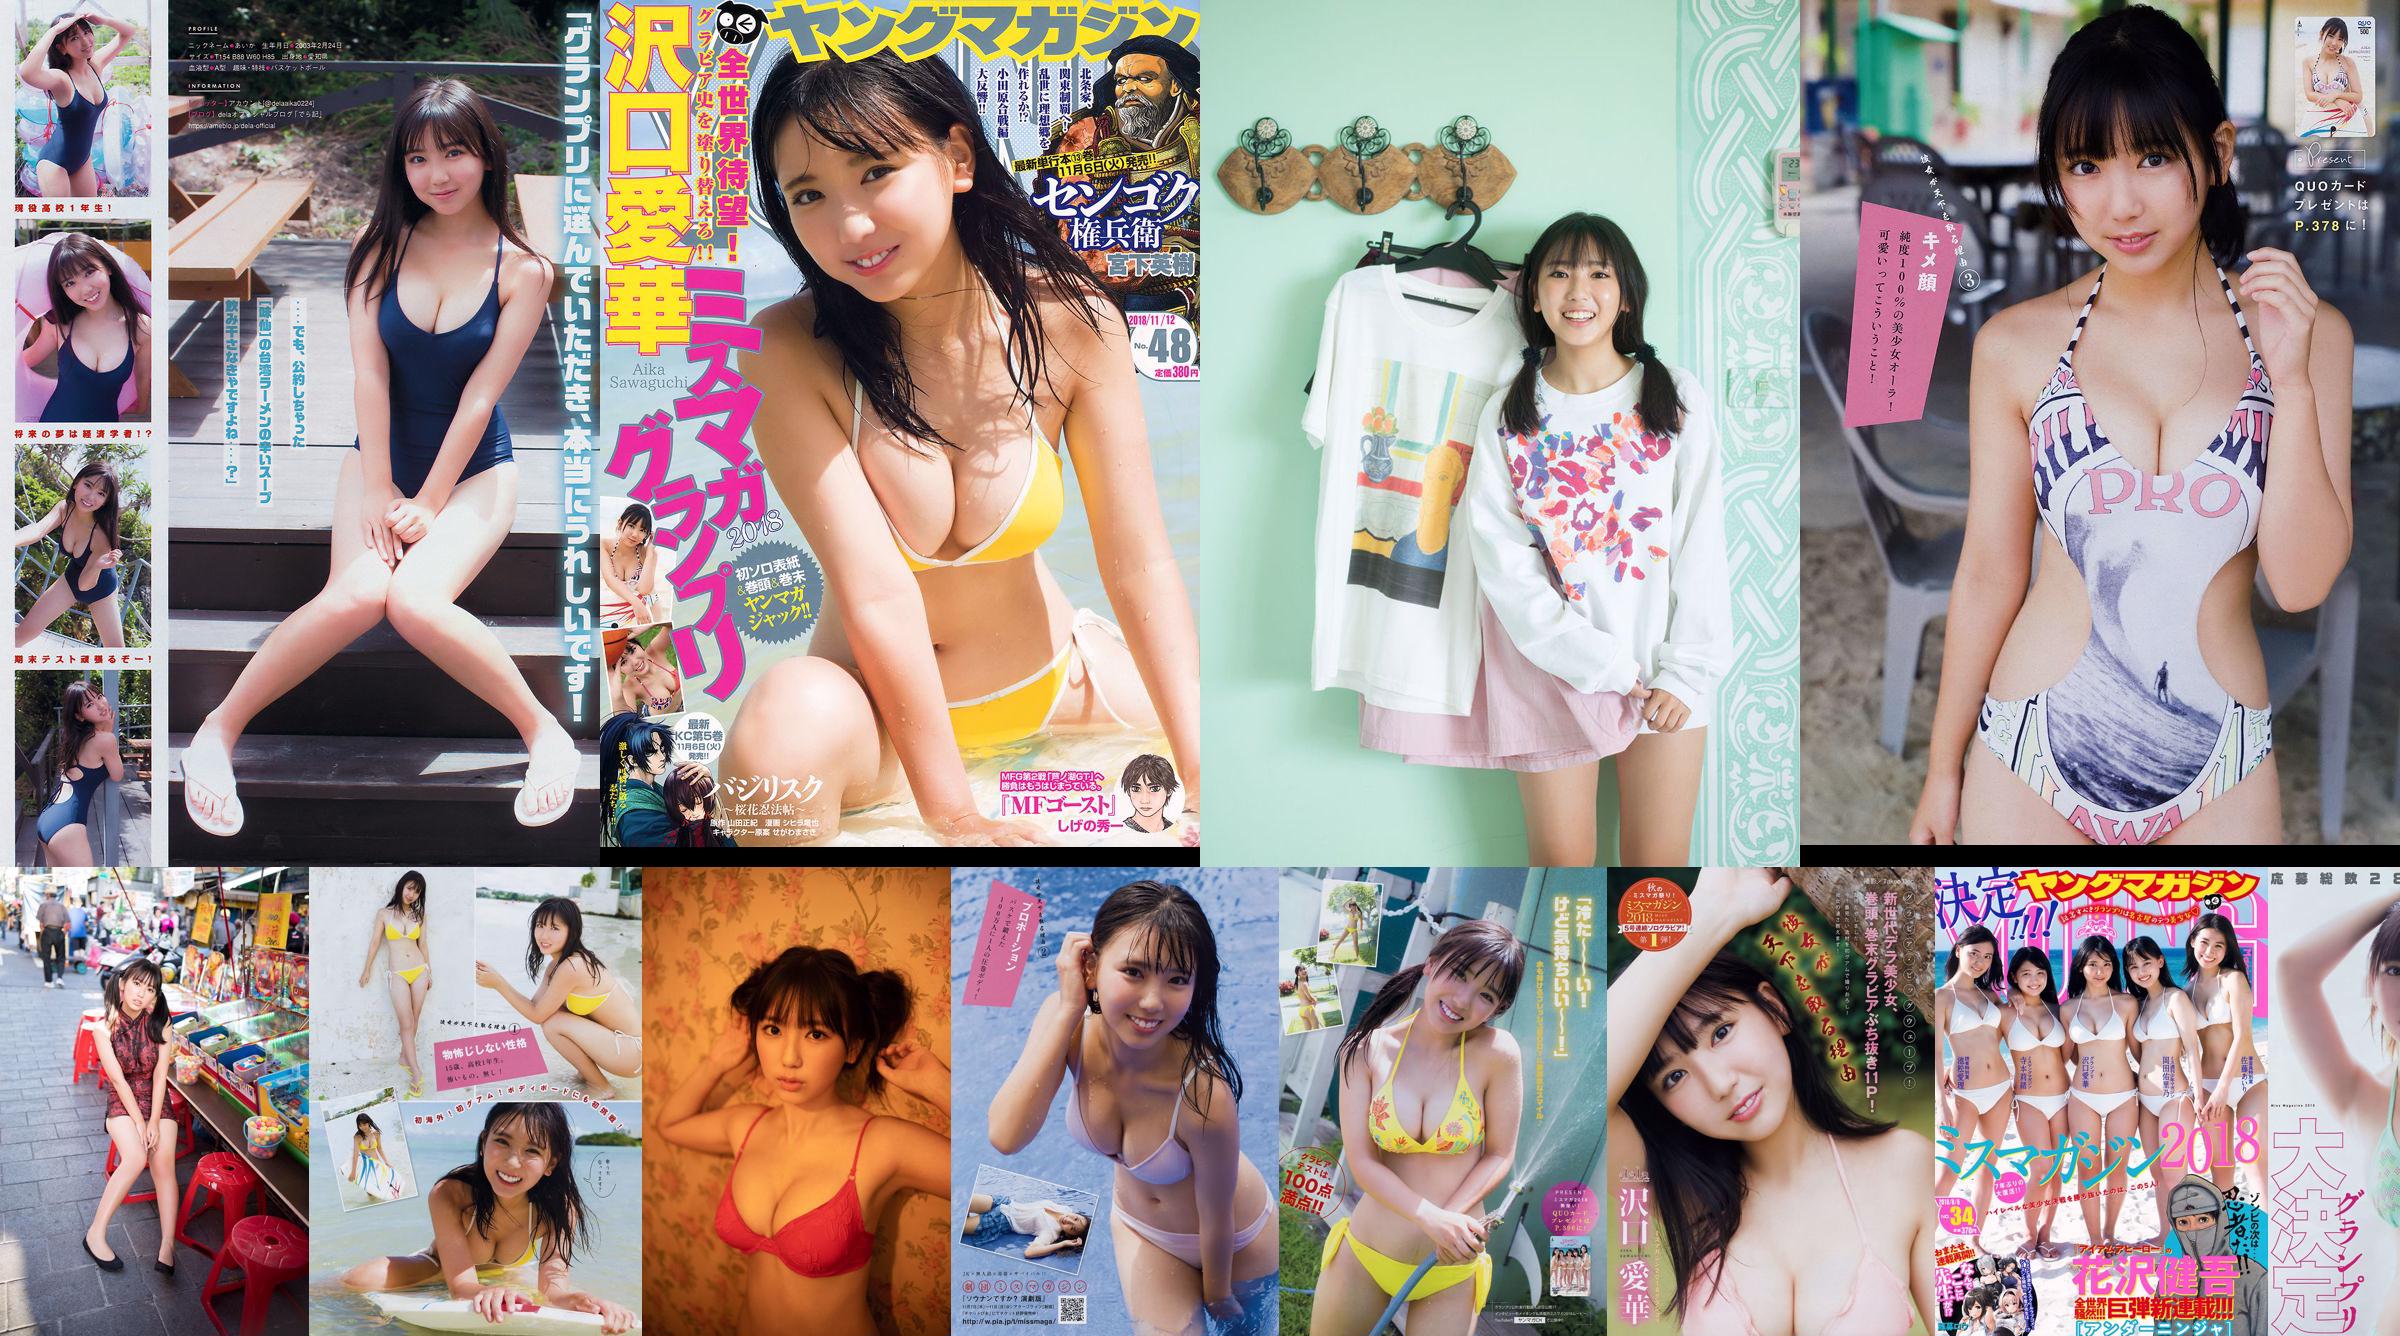 [Young Magazine] Aika Sawaguchi No.48 Photo Magazine nel 2018 No.bdf695 Pagina 1